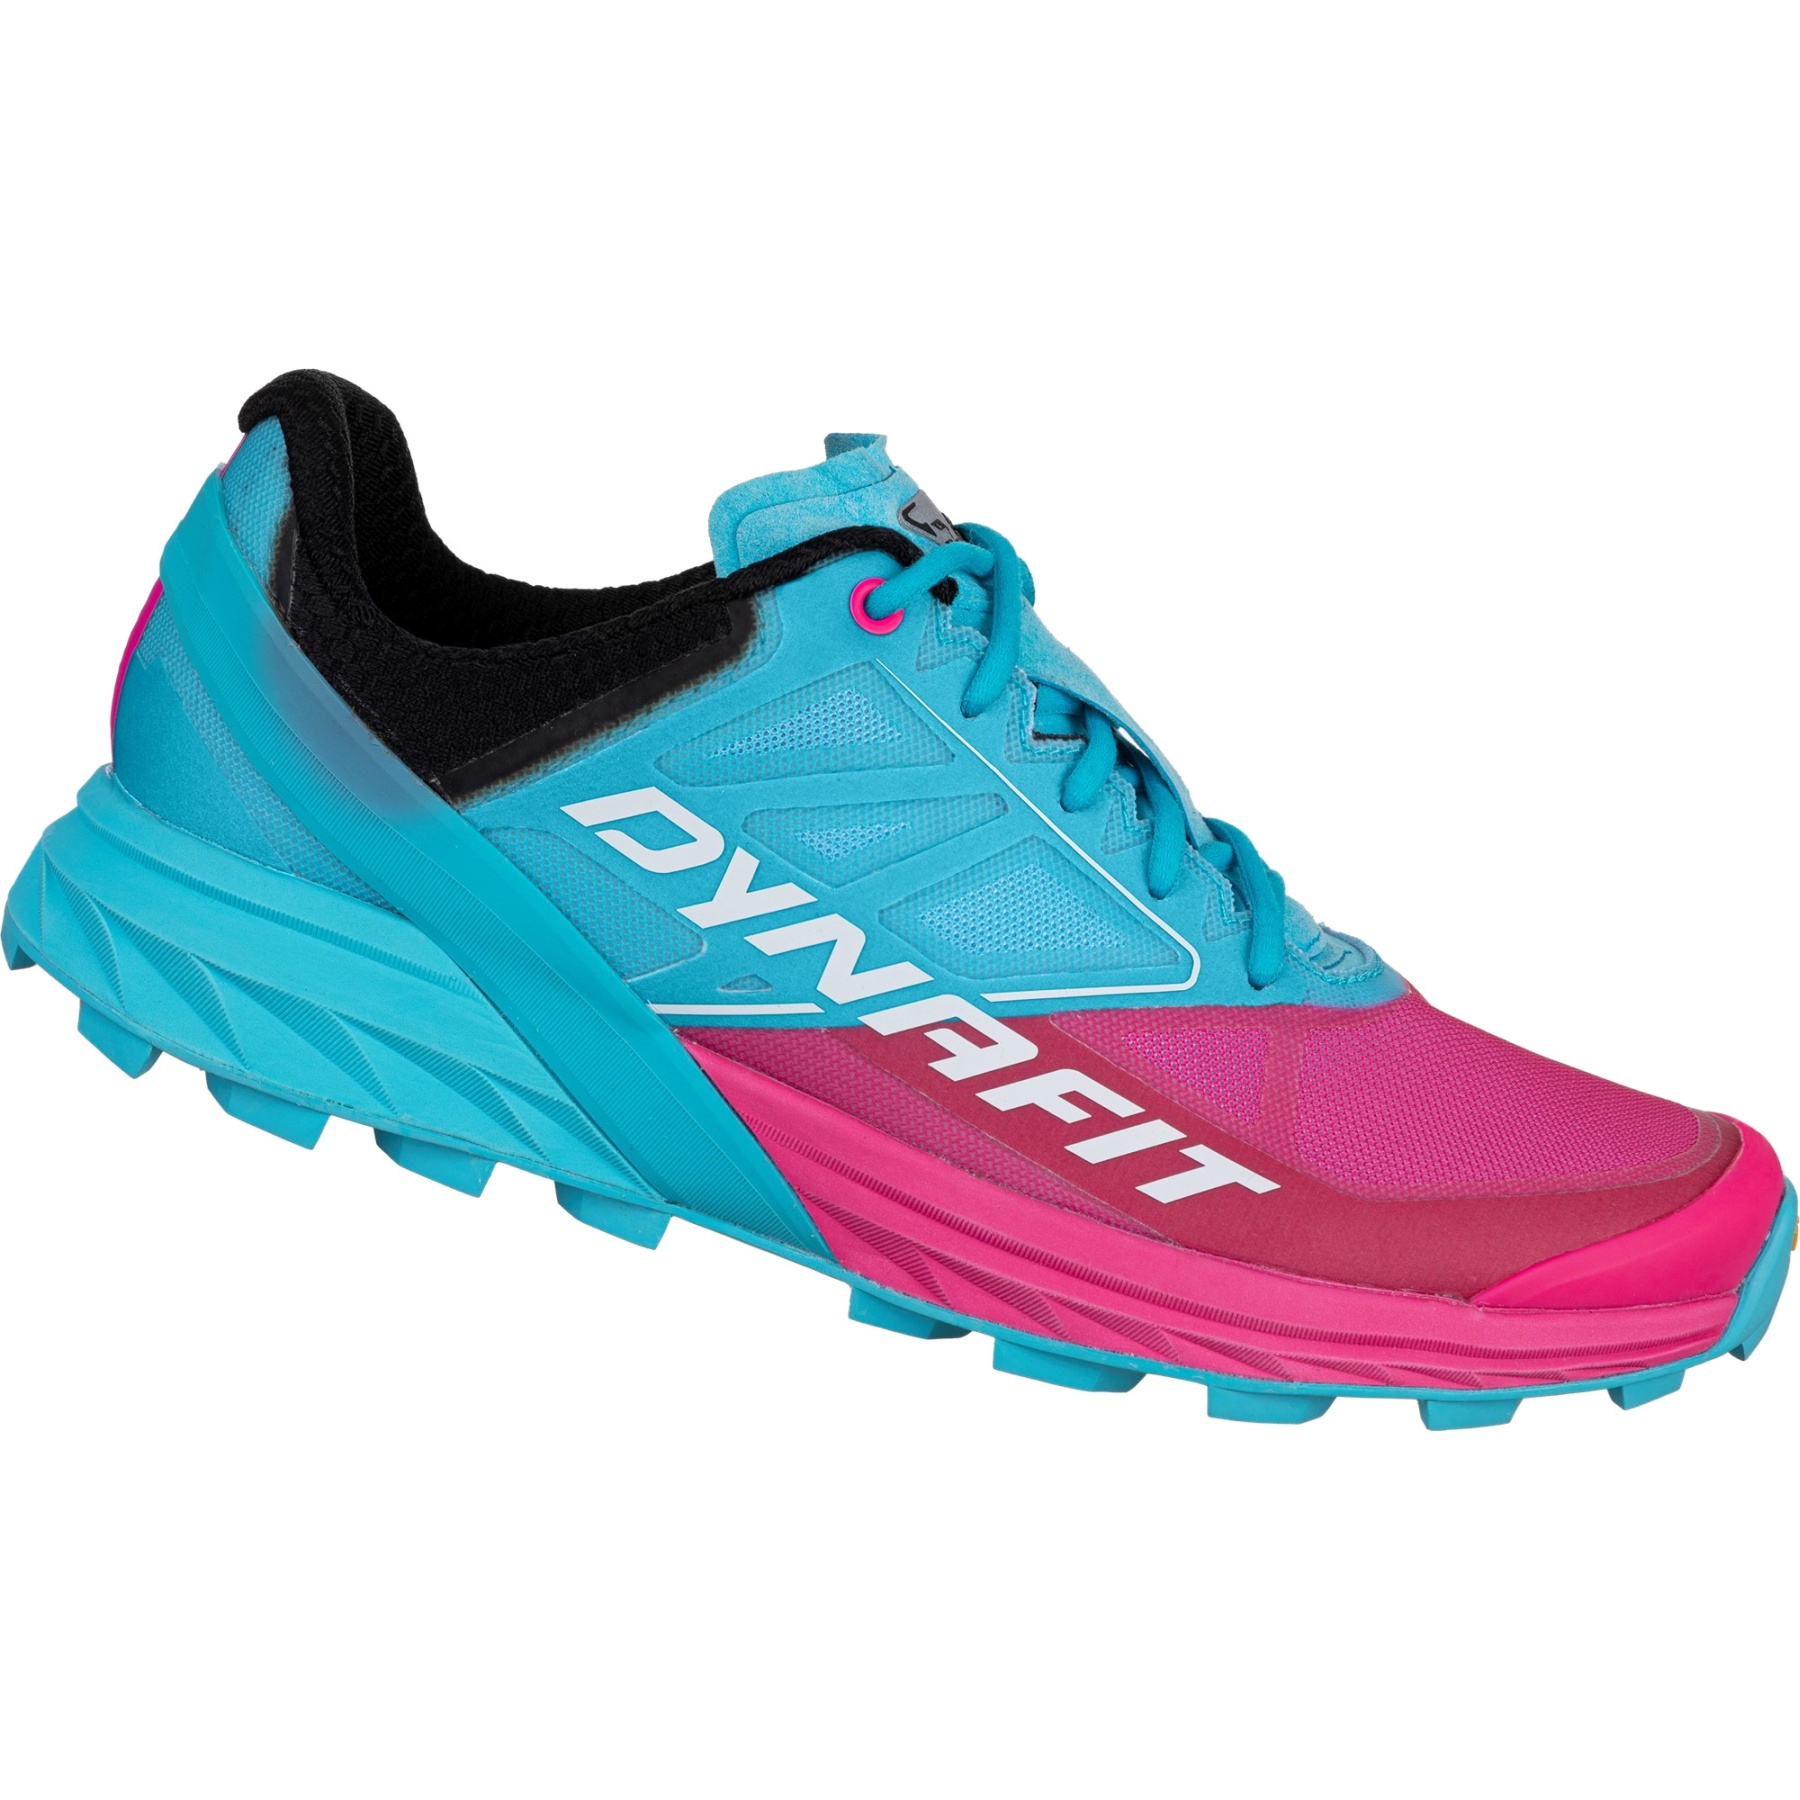 Produktbild von Dynafit Alpine Laufschuhe Damen - Turquoise Pink Glo